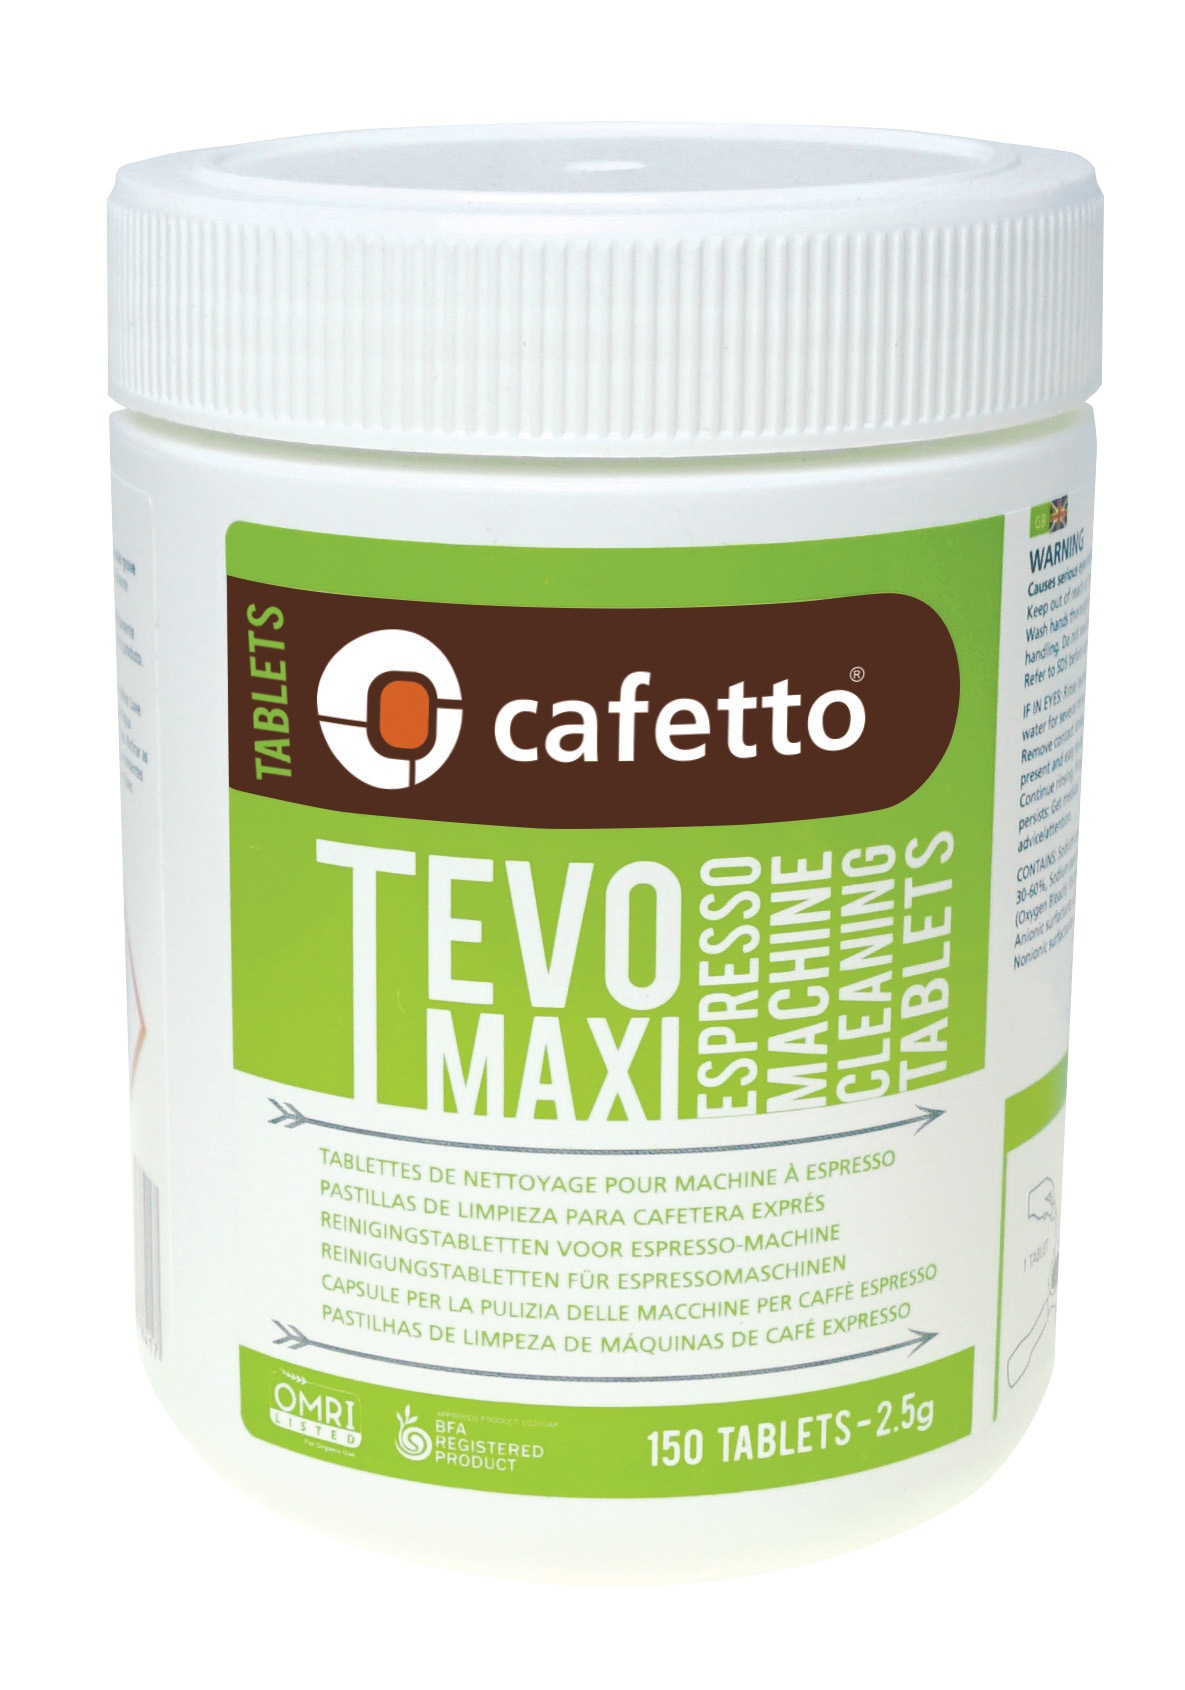 Cafetto Tevo maxi, rensetabletter til espressomaskiner, 150 tabsletter af 2,5 gr/stk.